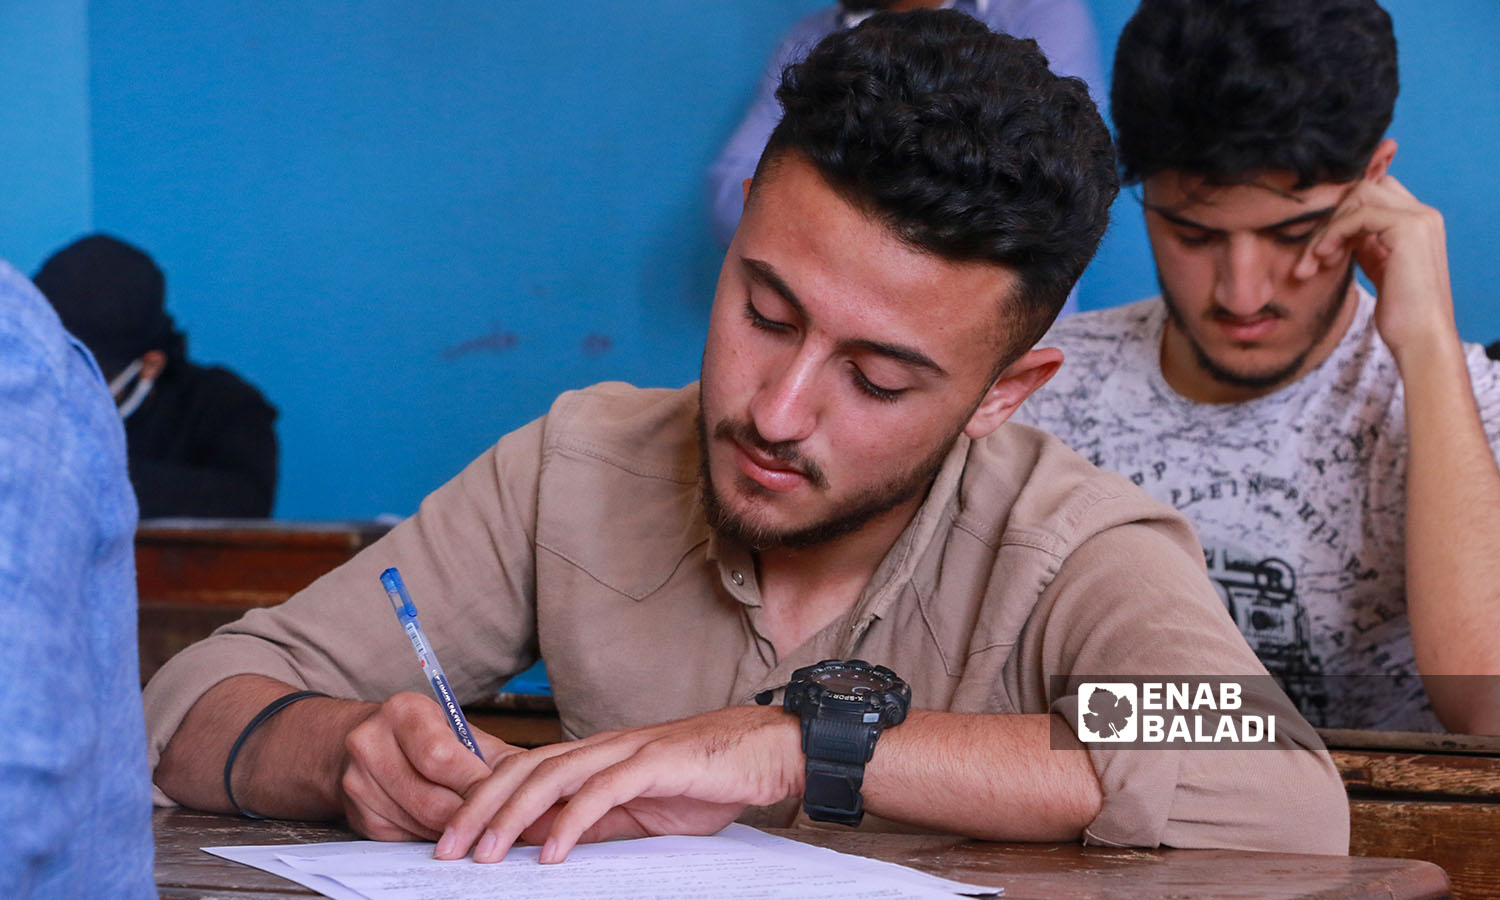 طالب في قاعة الامتحان في مدينة إدلب (عنب بلدي/ أنس الخولي)